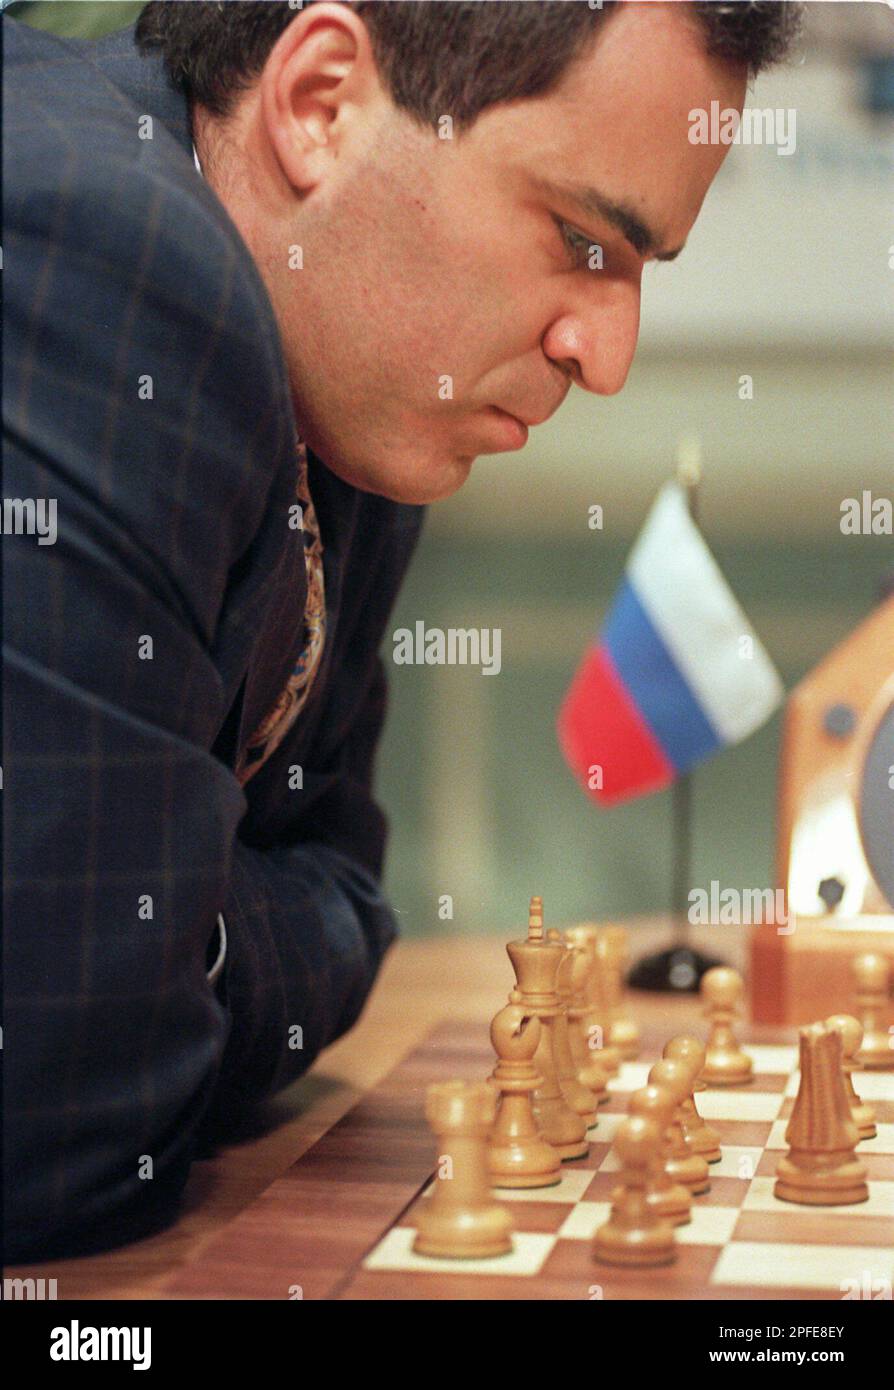 12 Kasparov International Master Folding Chess Set